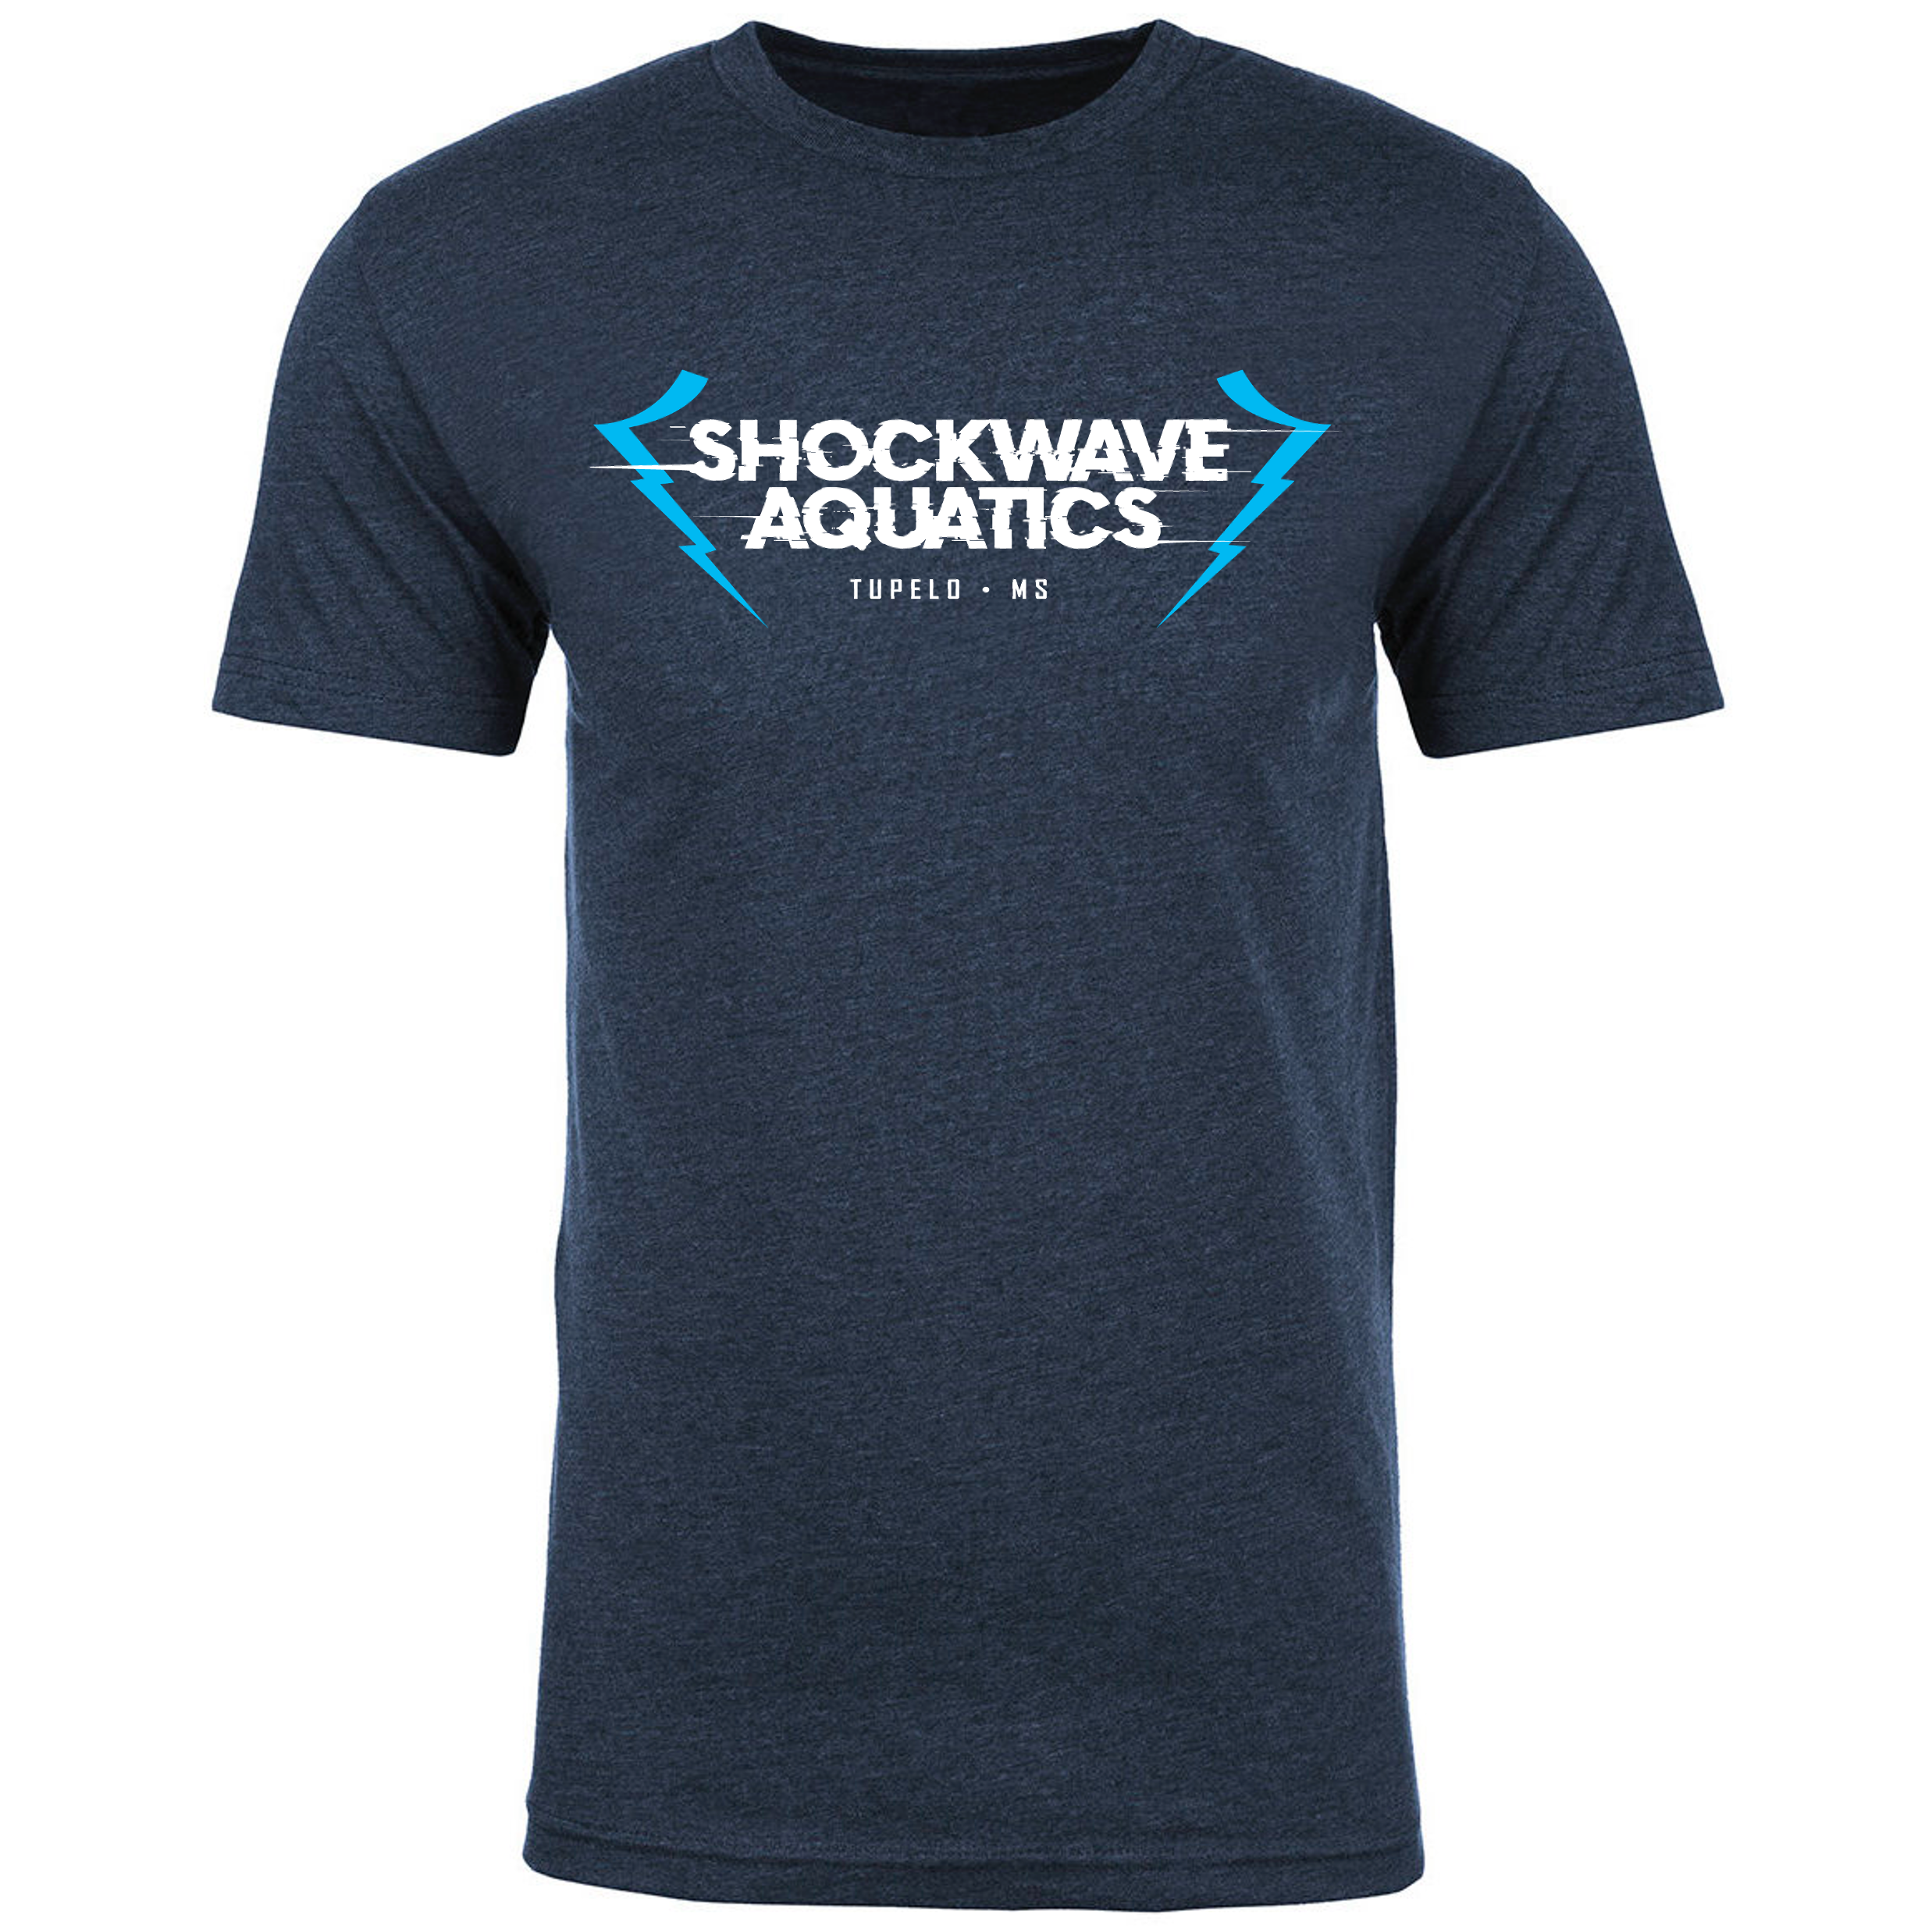 Team T-Shirt #4 - Shockwave